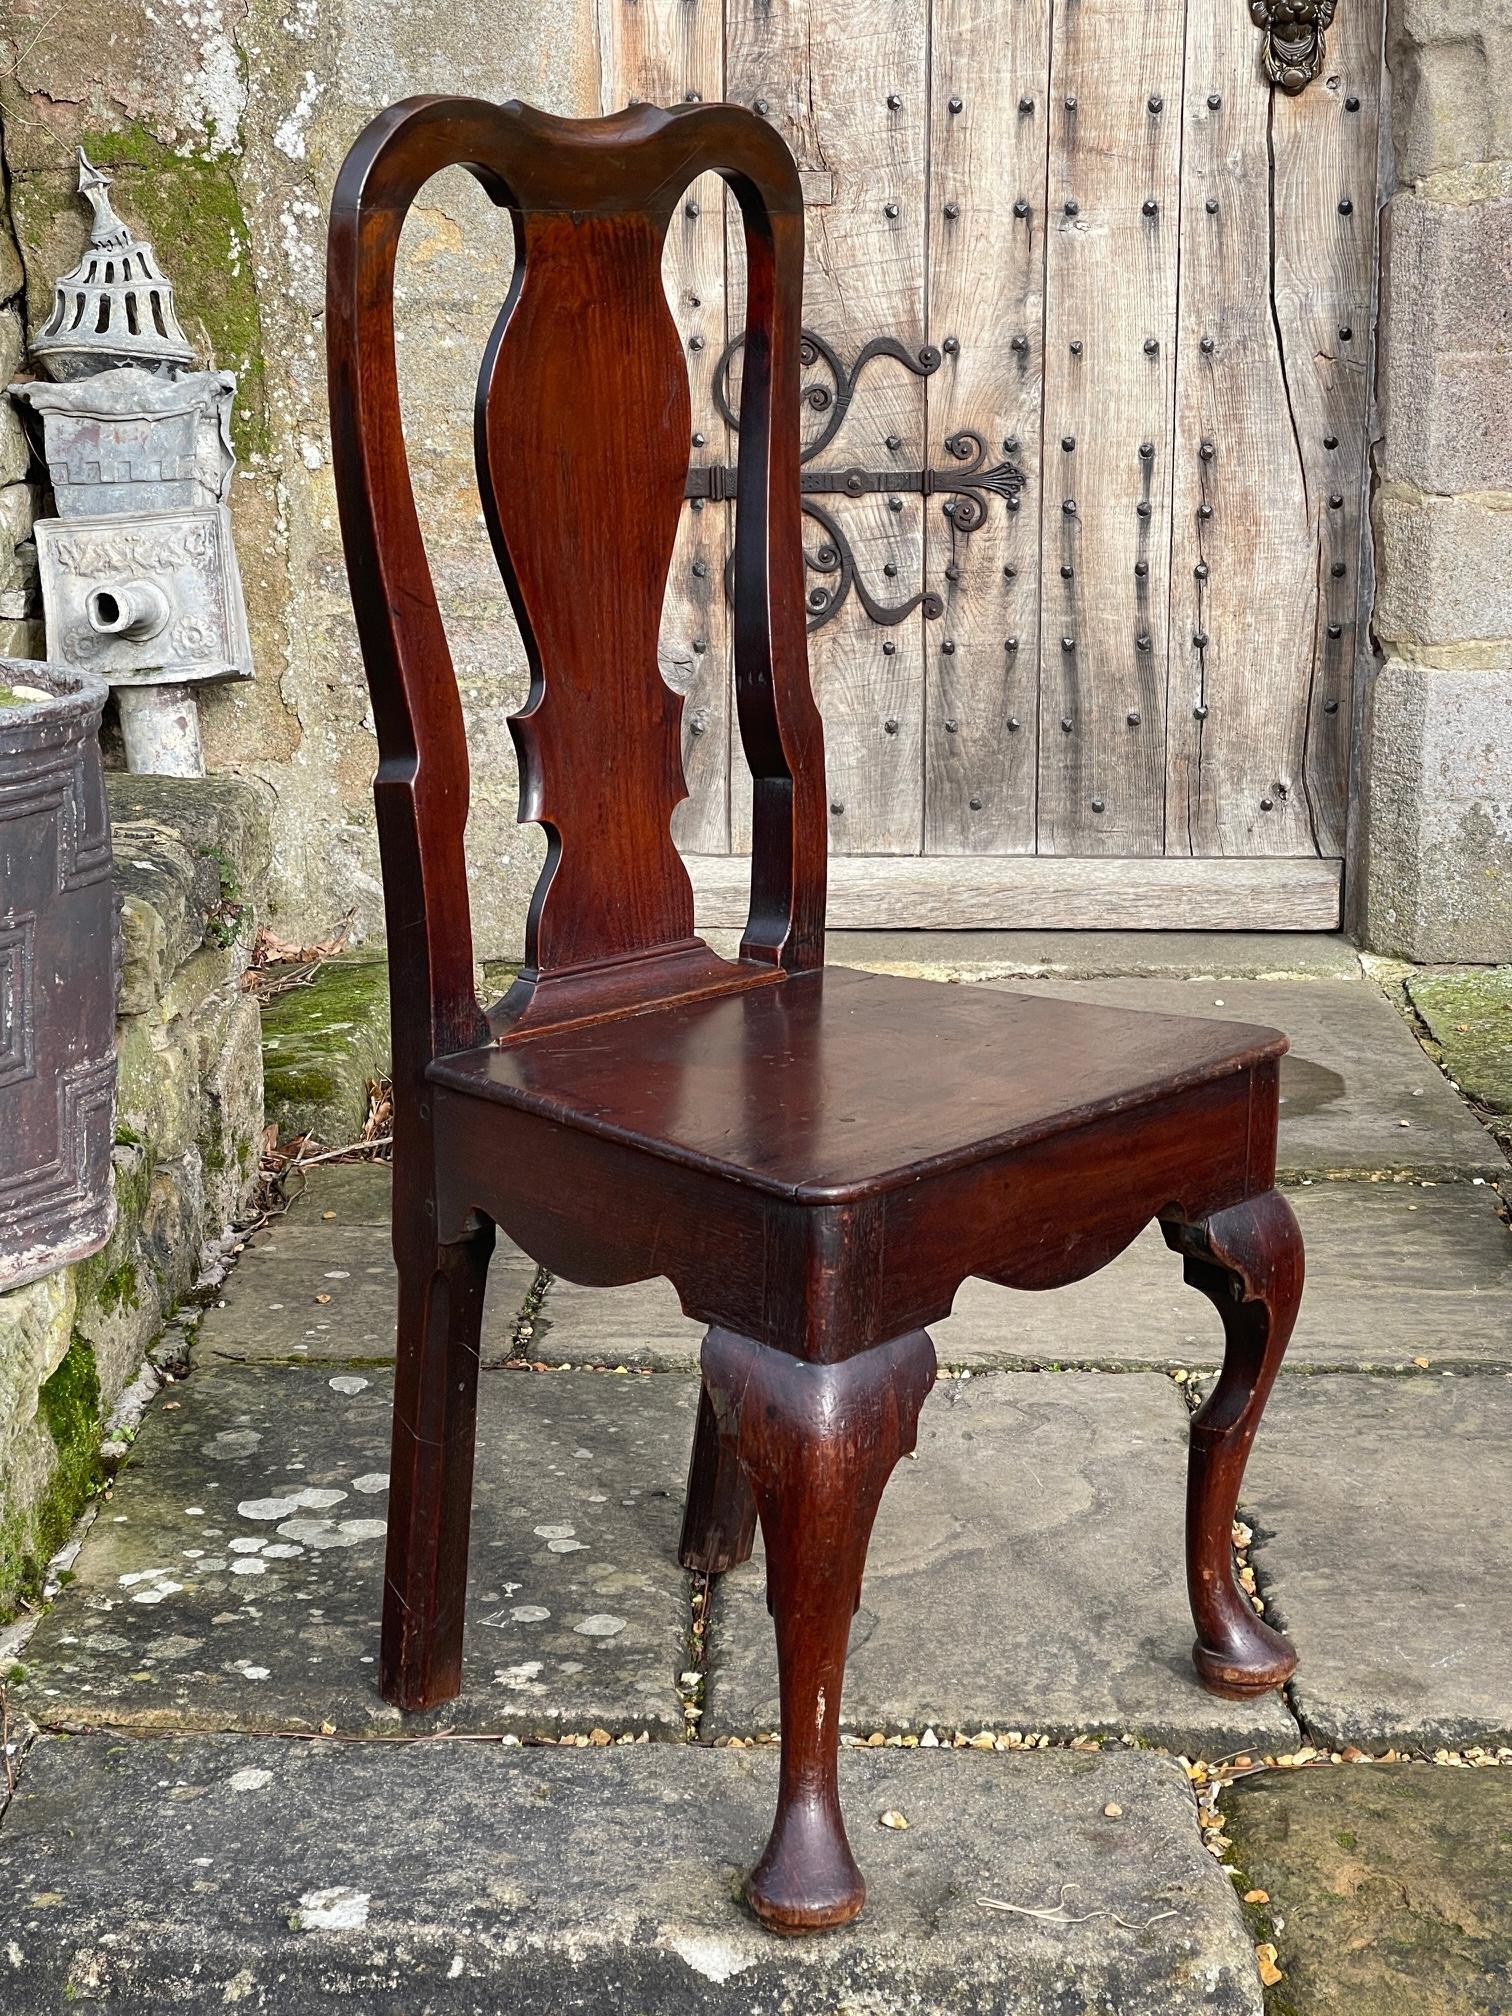 Gute Qualität Königin Anne Zeitraum einzigen Stuhl c1720

gut geformte Beine und Sitzschienen, reiche Farbe und Patina

Größe 101 cm hoch

49 cm breit

Sitz 44 cm